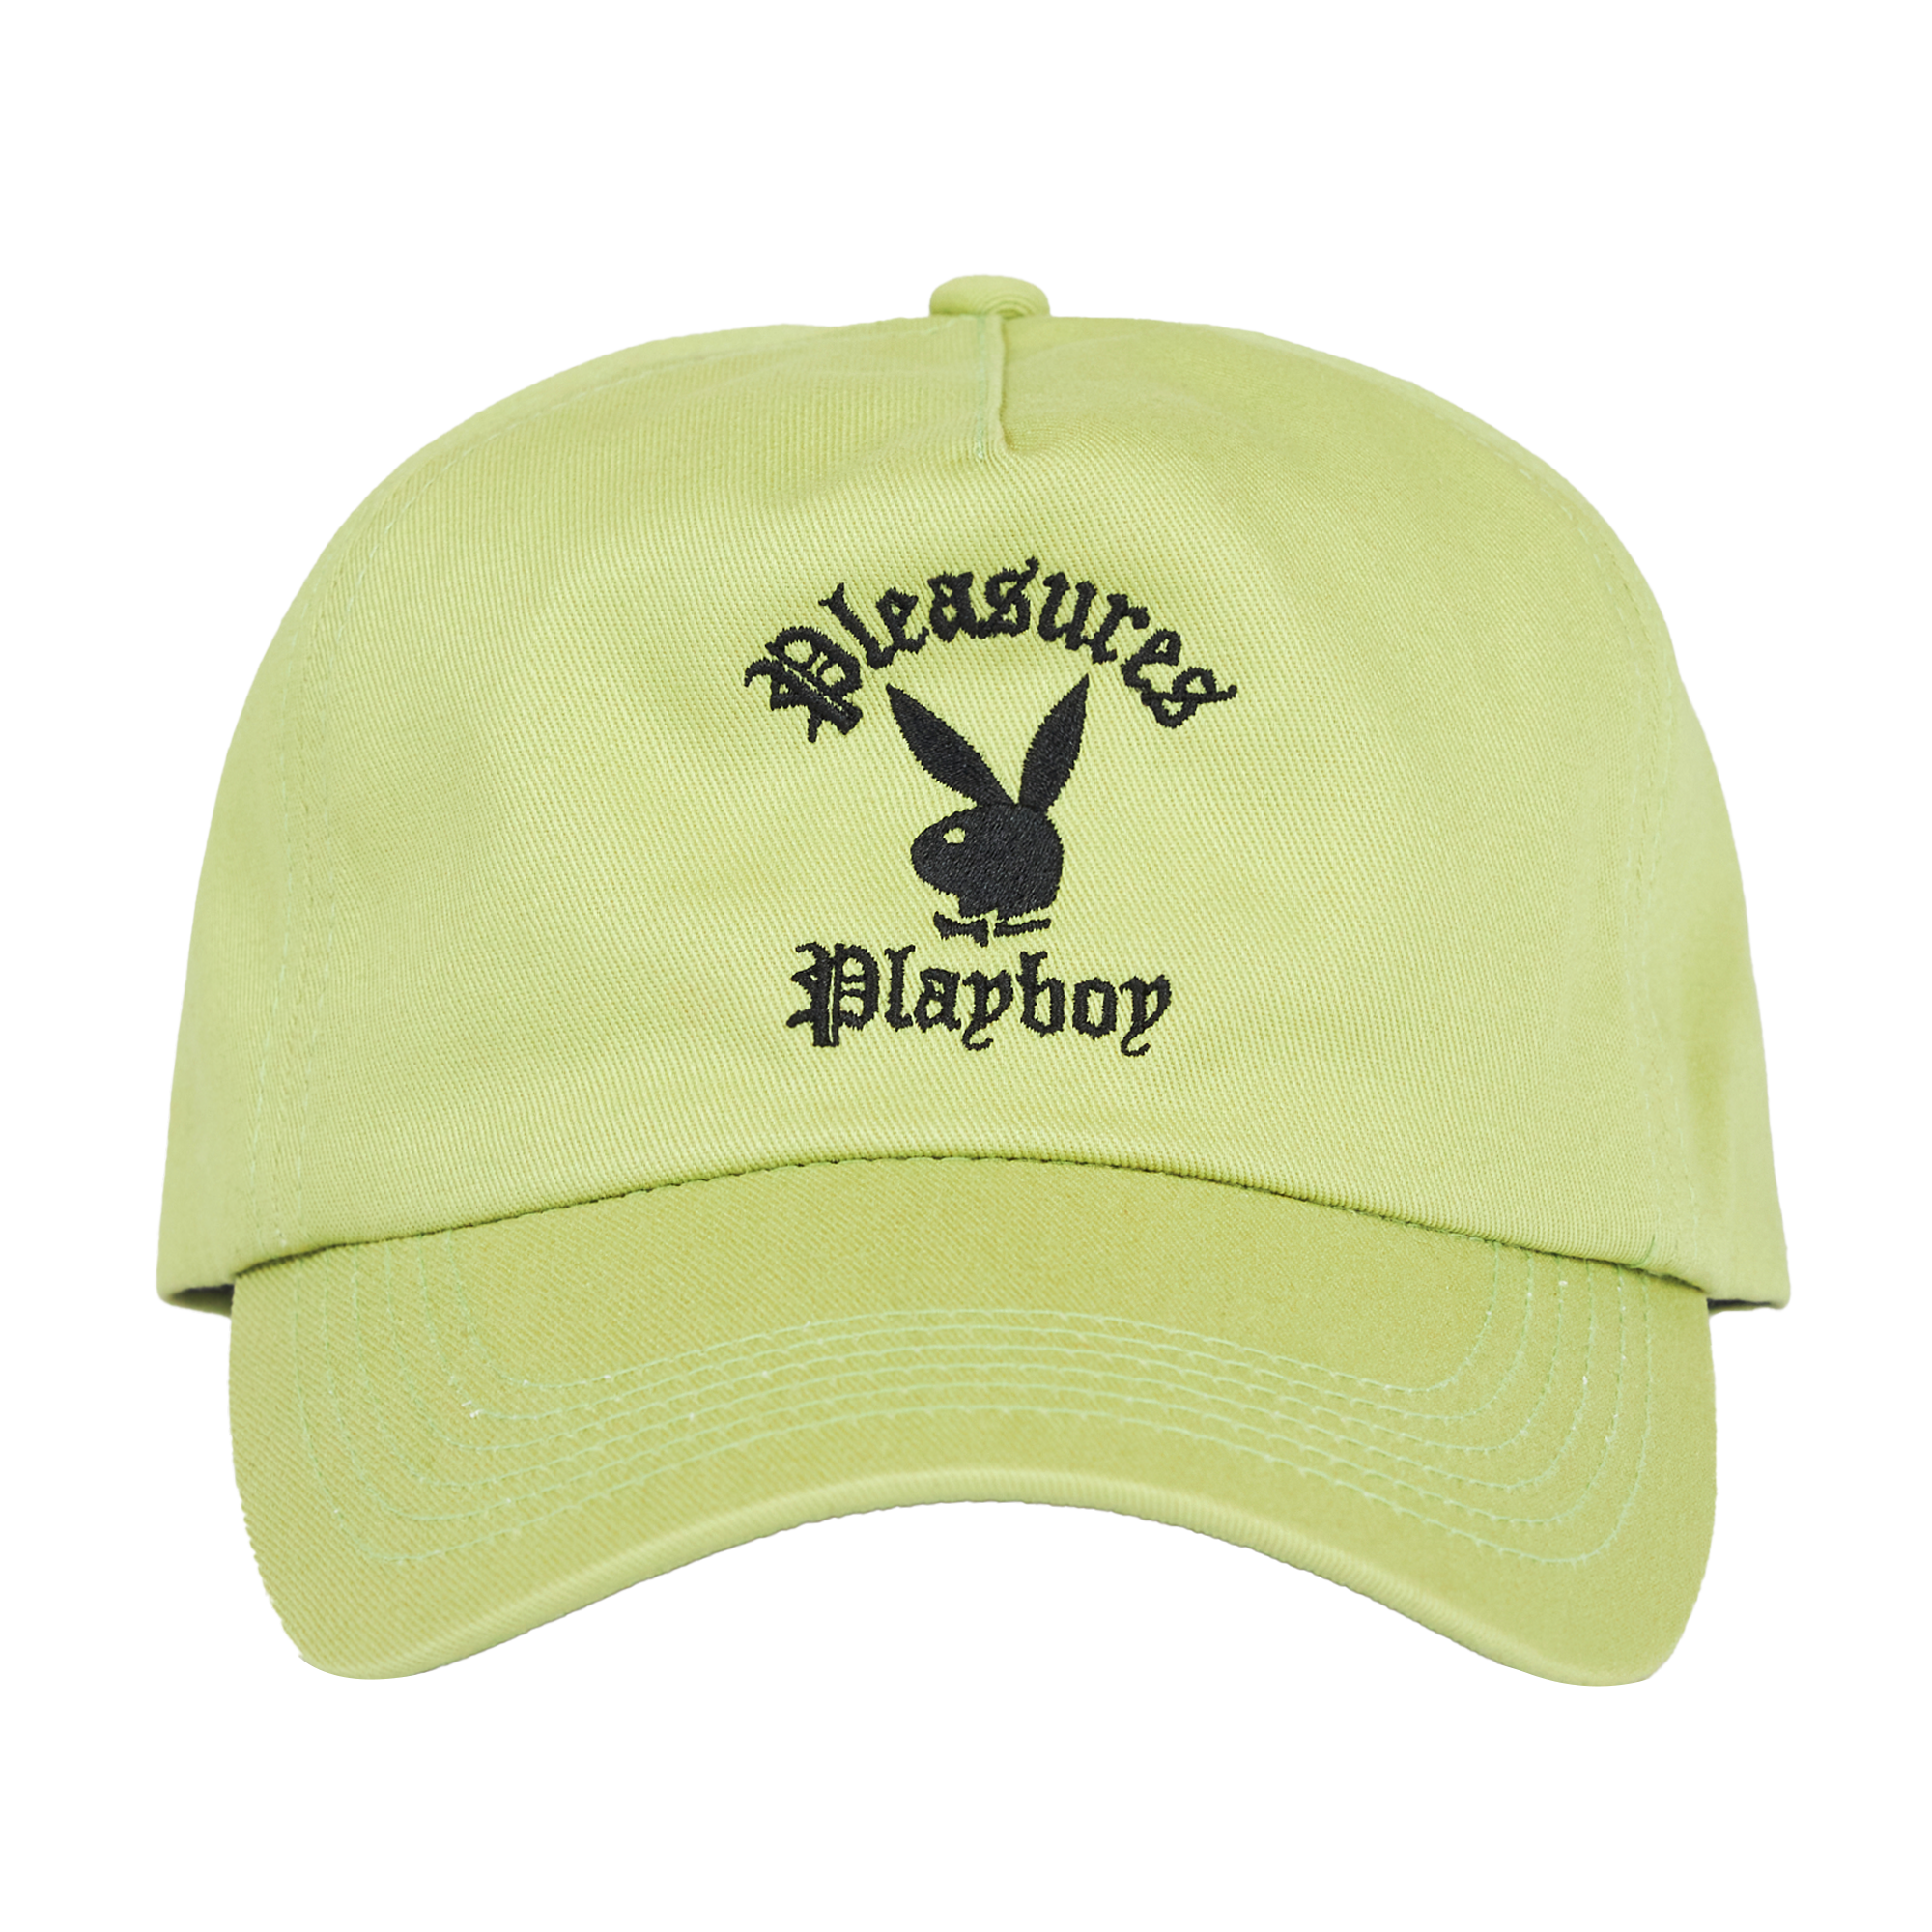 Playboy x Pleasures Invite Strapback Hat